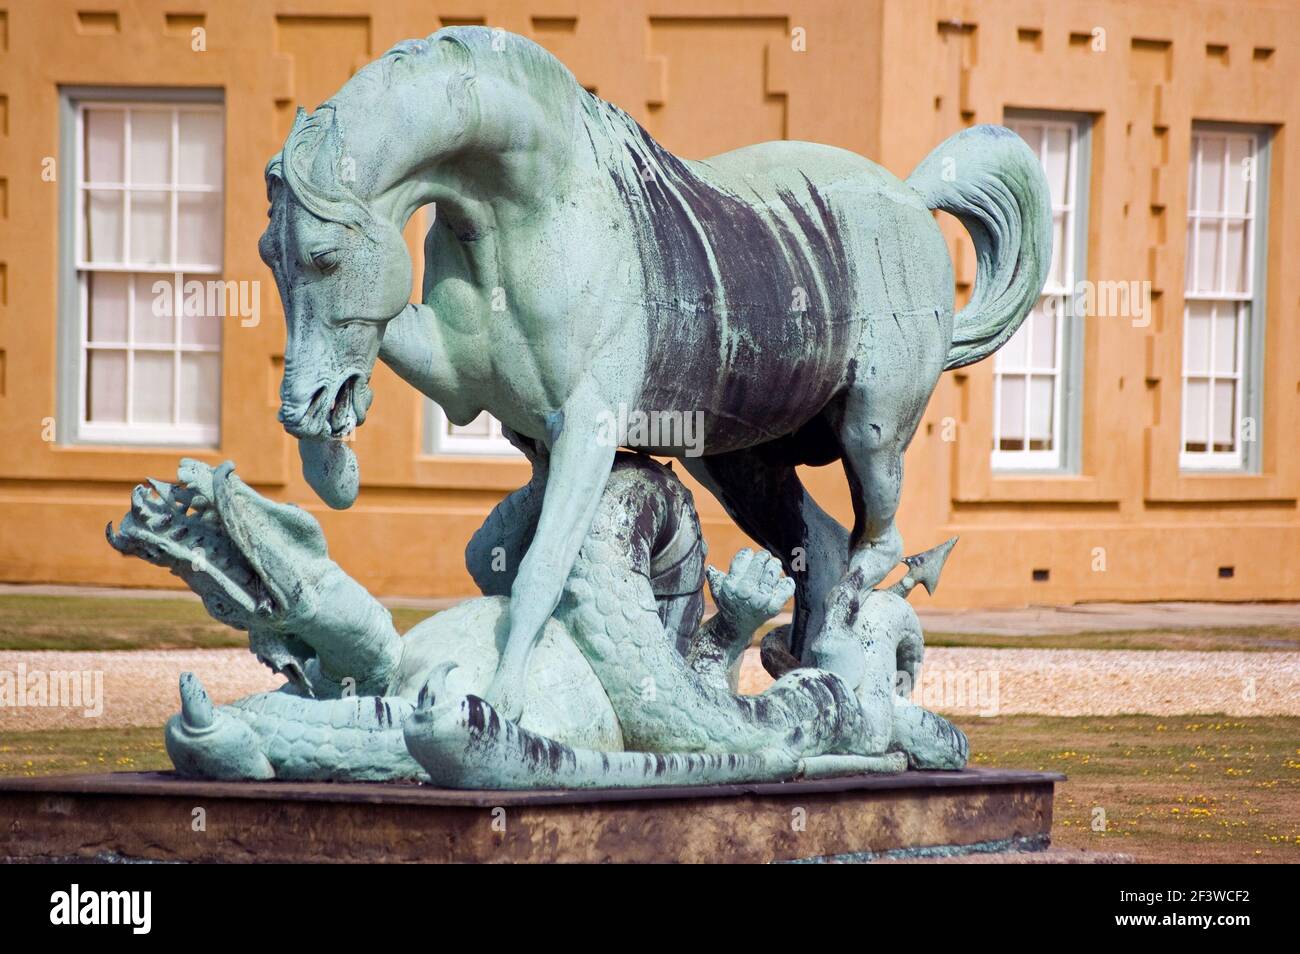 Statua di bronzo di un cavallo che calpesta un drago. Fuori dalla residenza signorile di Stratfield Saye, sede dell'eroe militare il primo duca di Wellington. Vicino basing Foto Stock